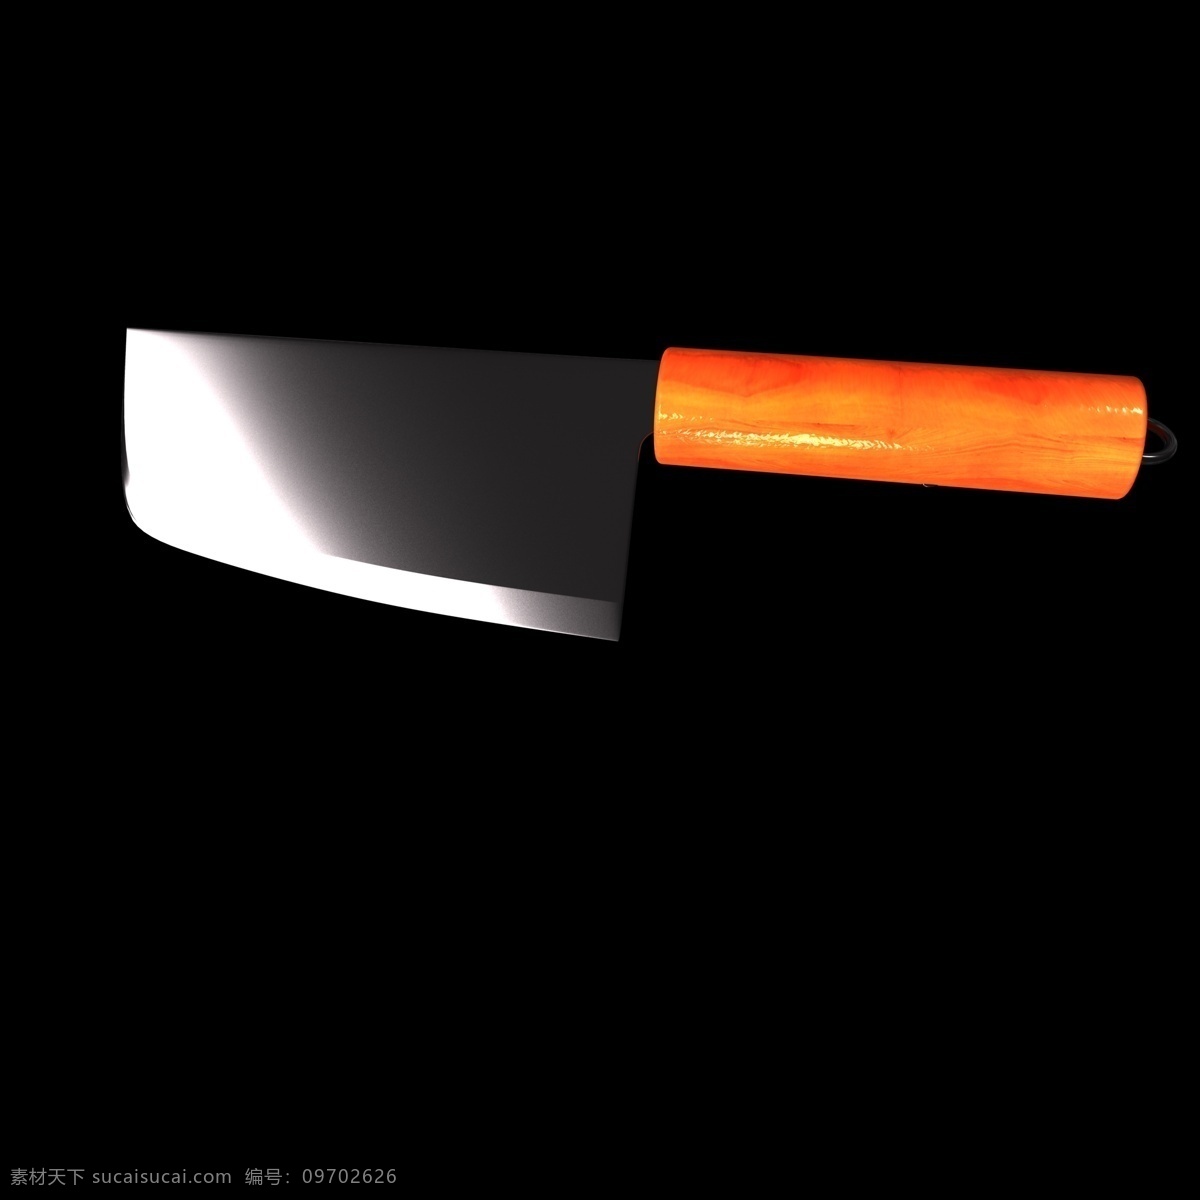 橙色 刀具 插图 装饰 刀子 刀具插图 橙色刀子插图 锋利器具 海报插图装饰 生活用具插图 c4d 立体